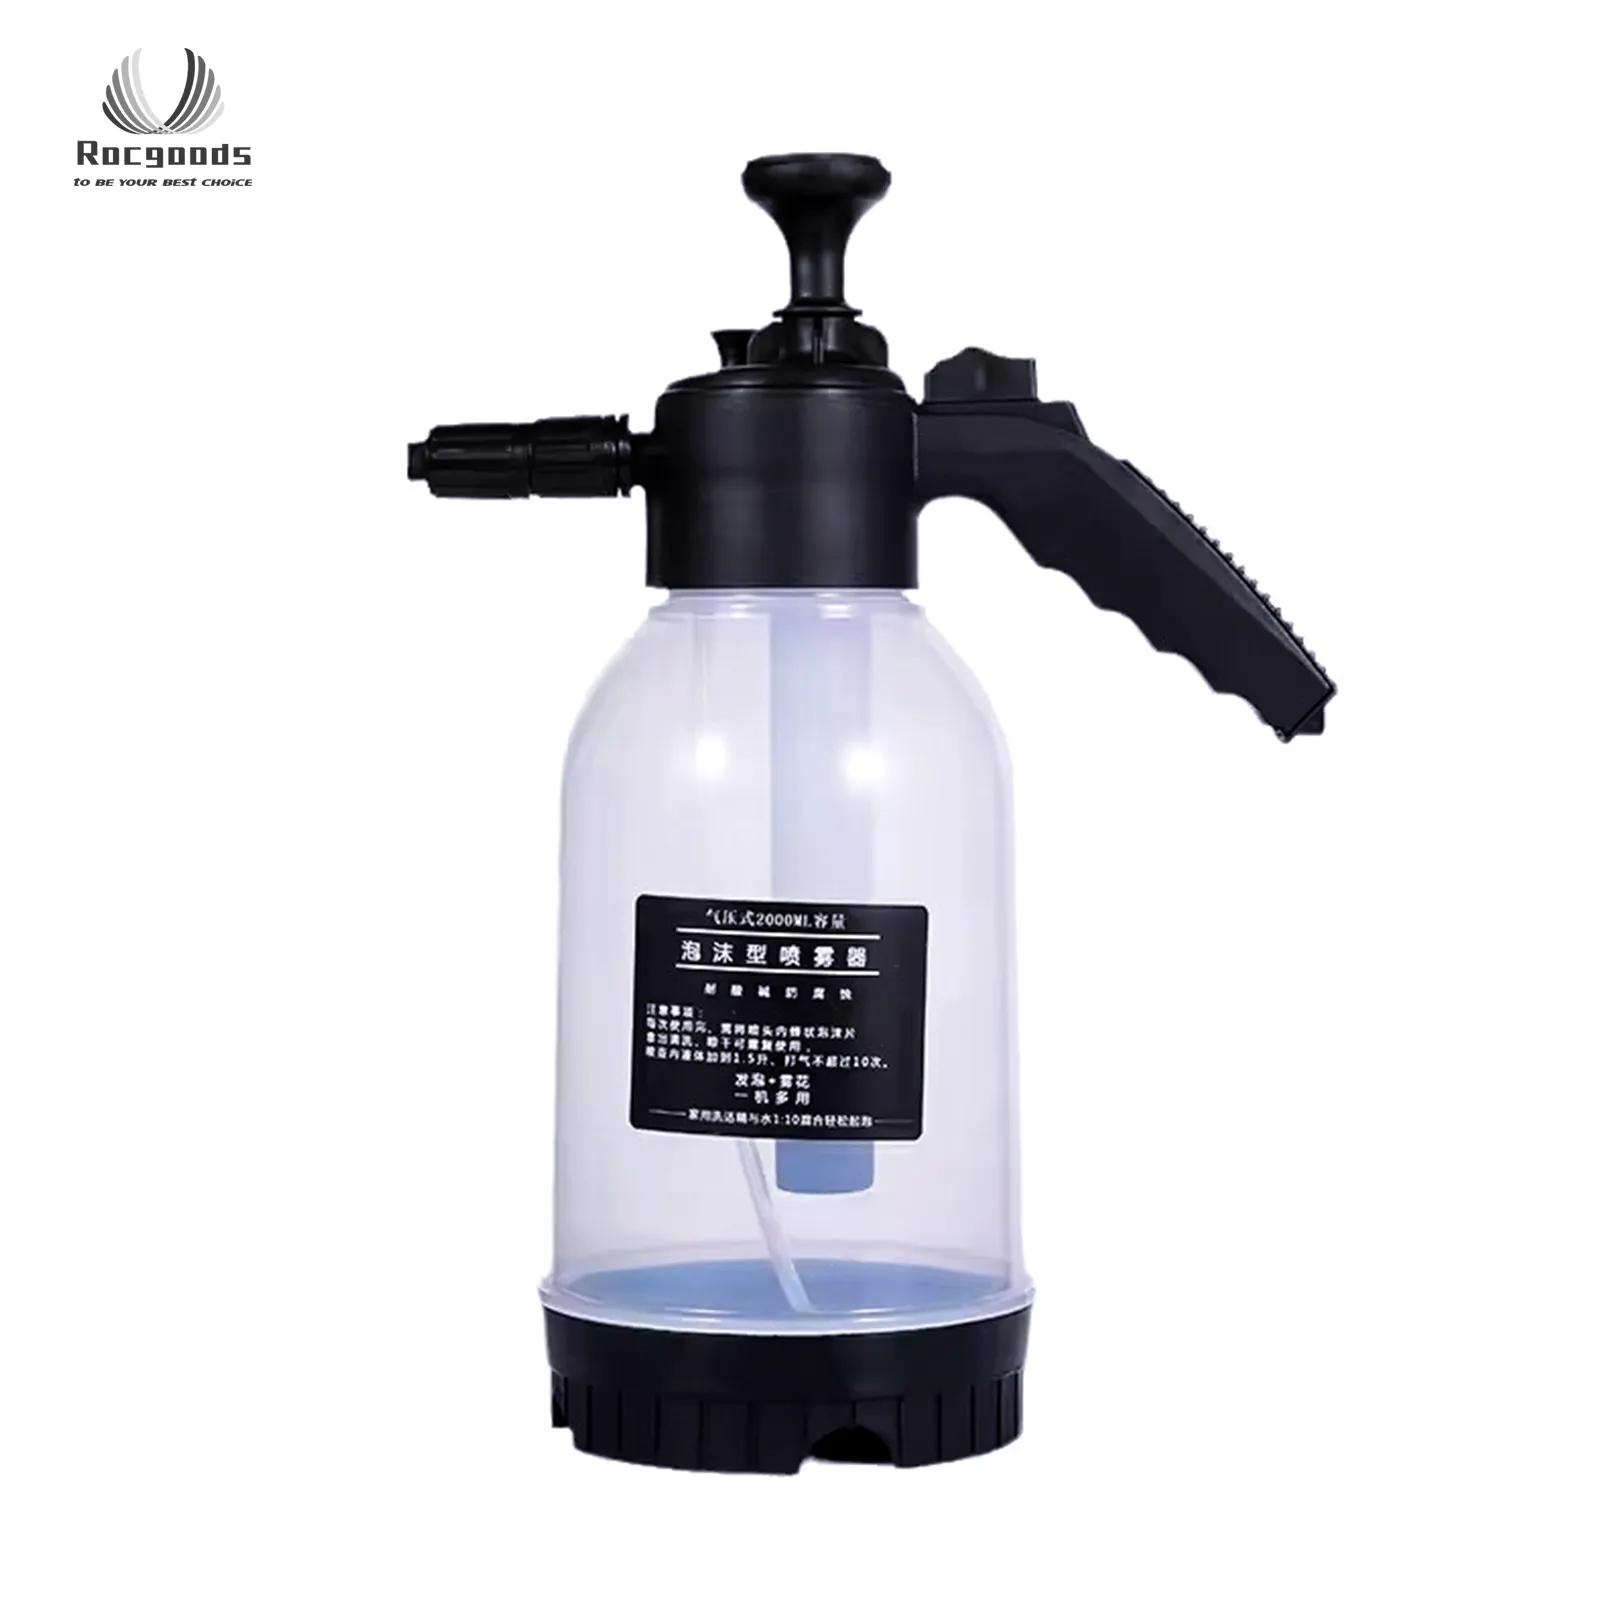 Car wash pressure sprayer foam sprayer car wash seametal 2l hand pump foam sprayer for car